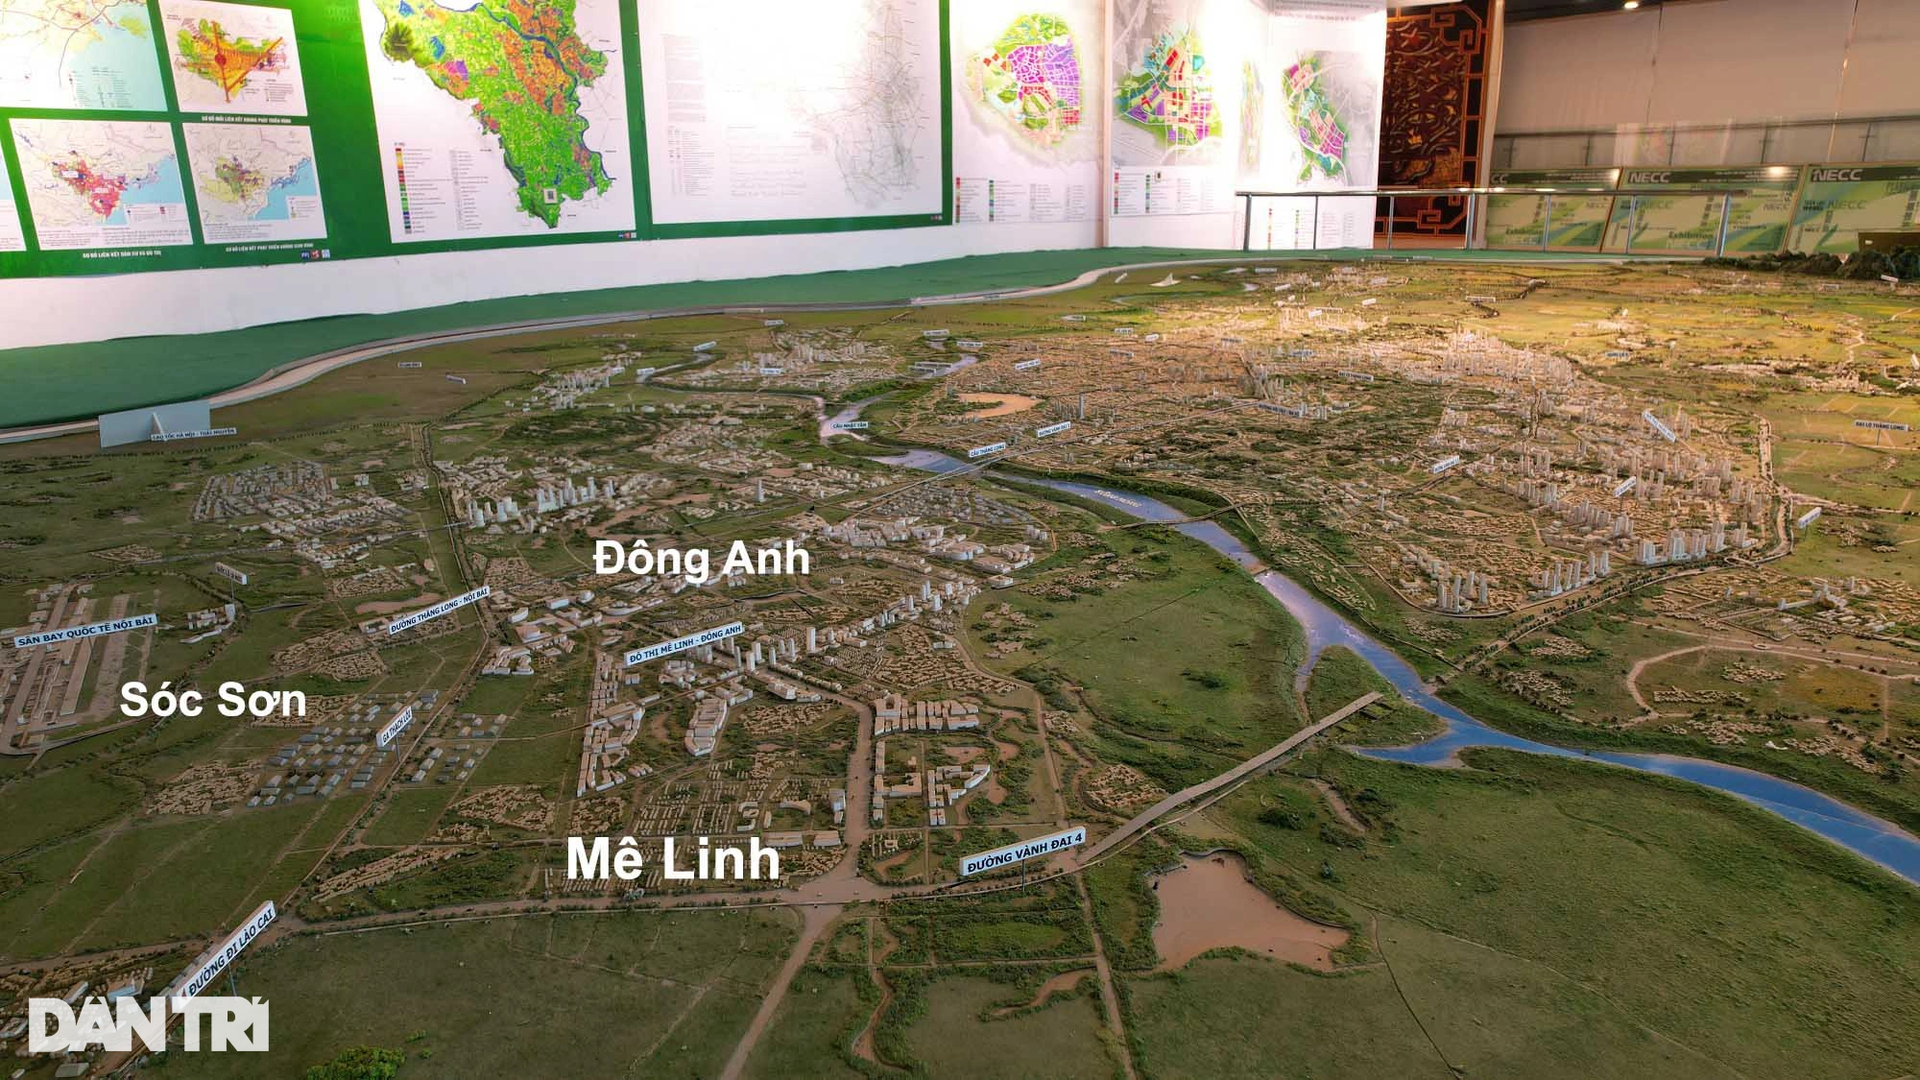 Hiện trạng 2 thành phố tương lai bao quanh nội đô Hà Nội - 10